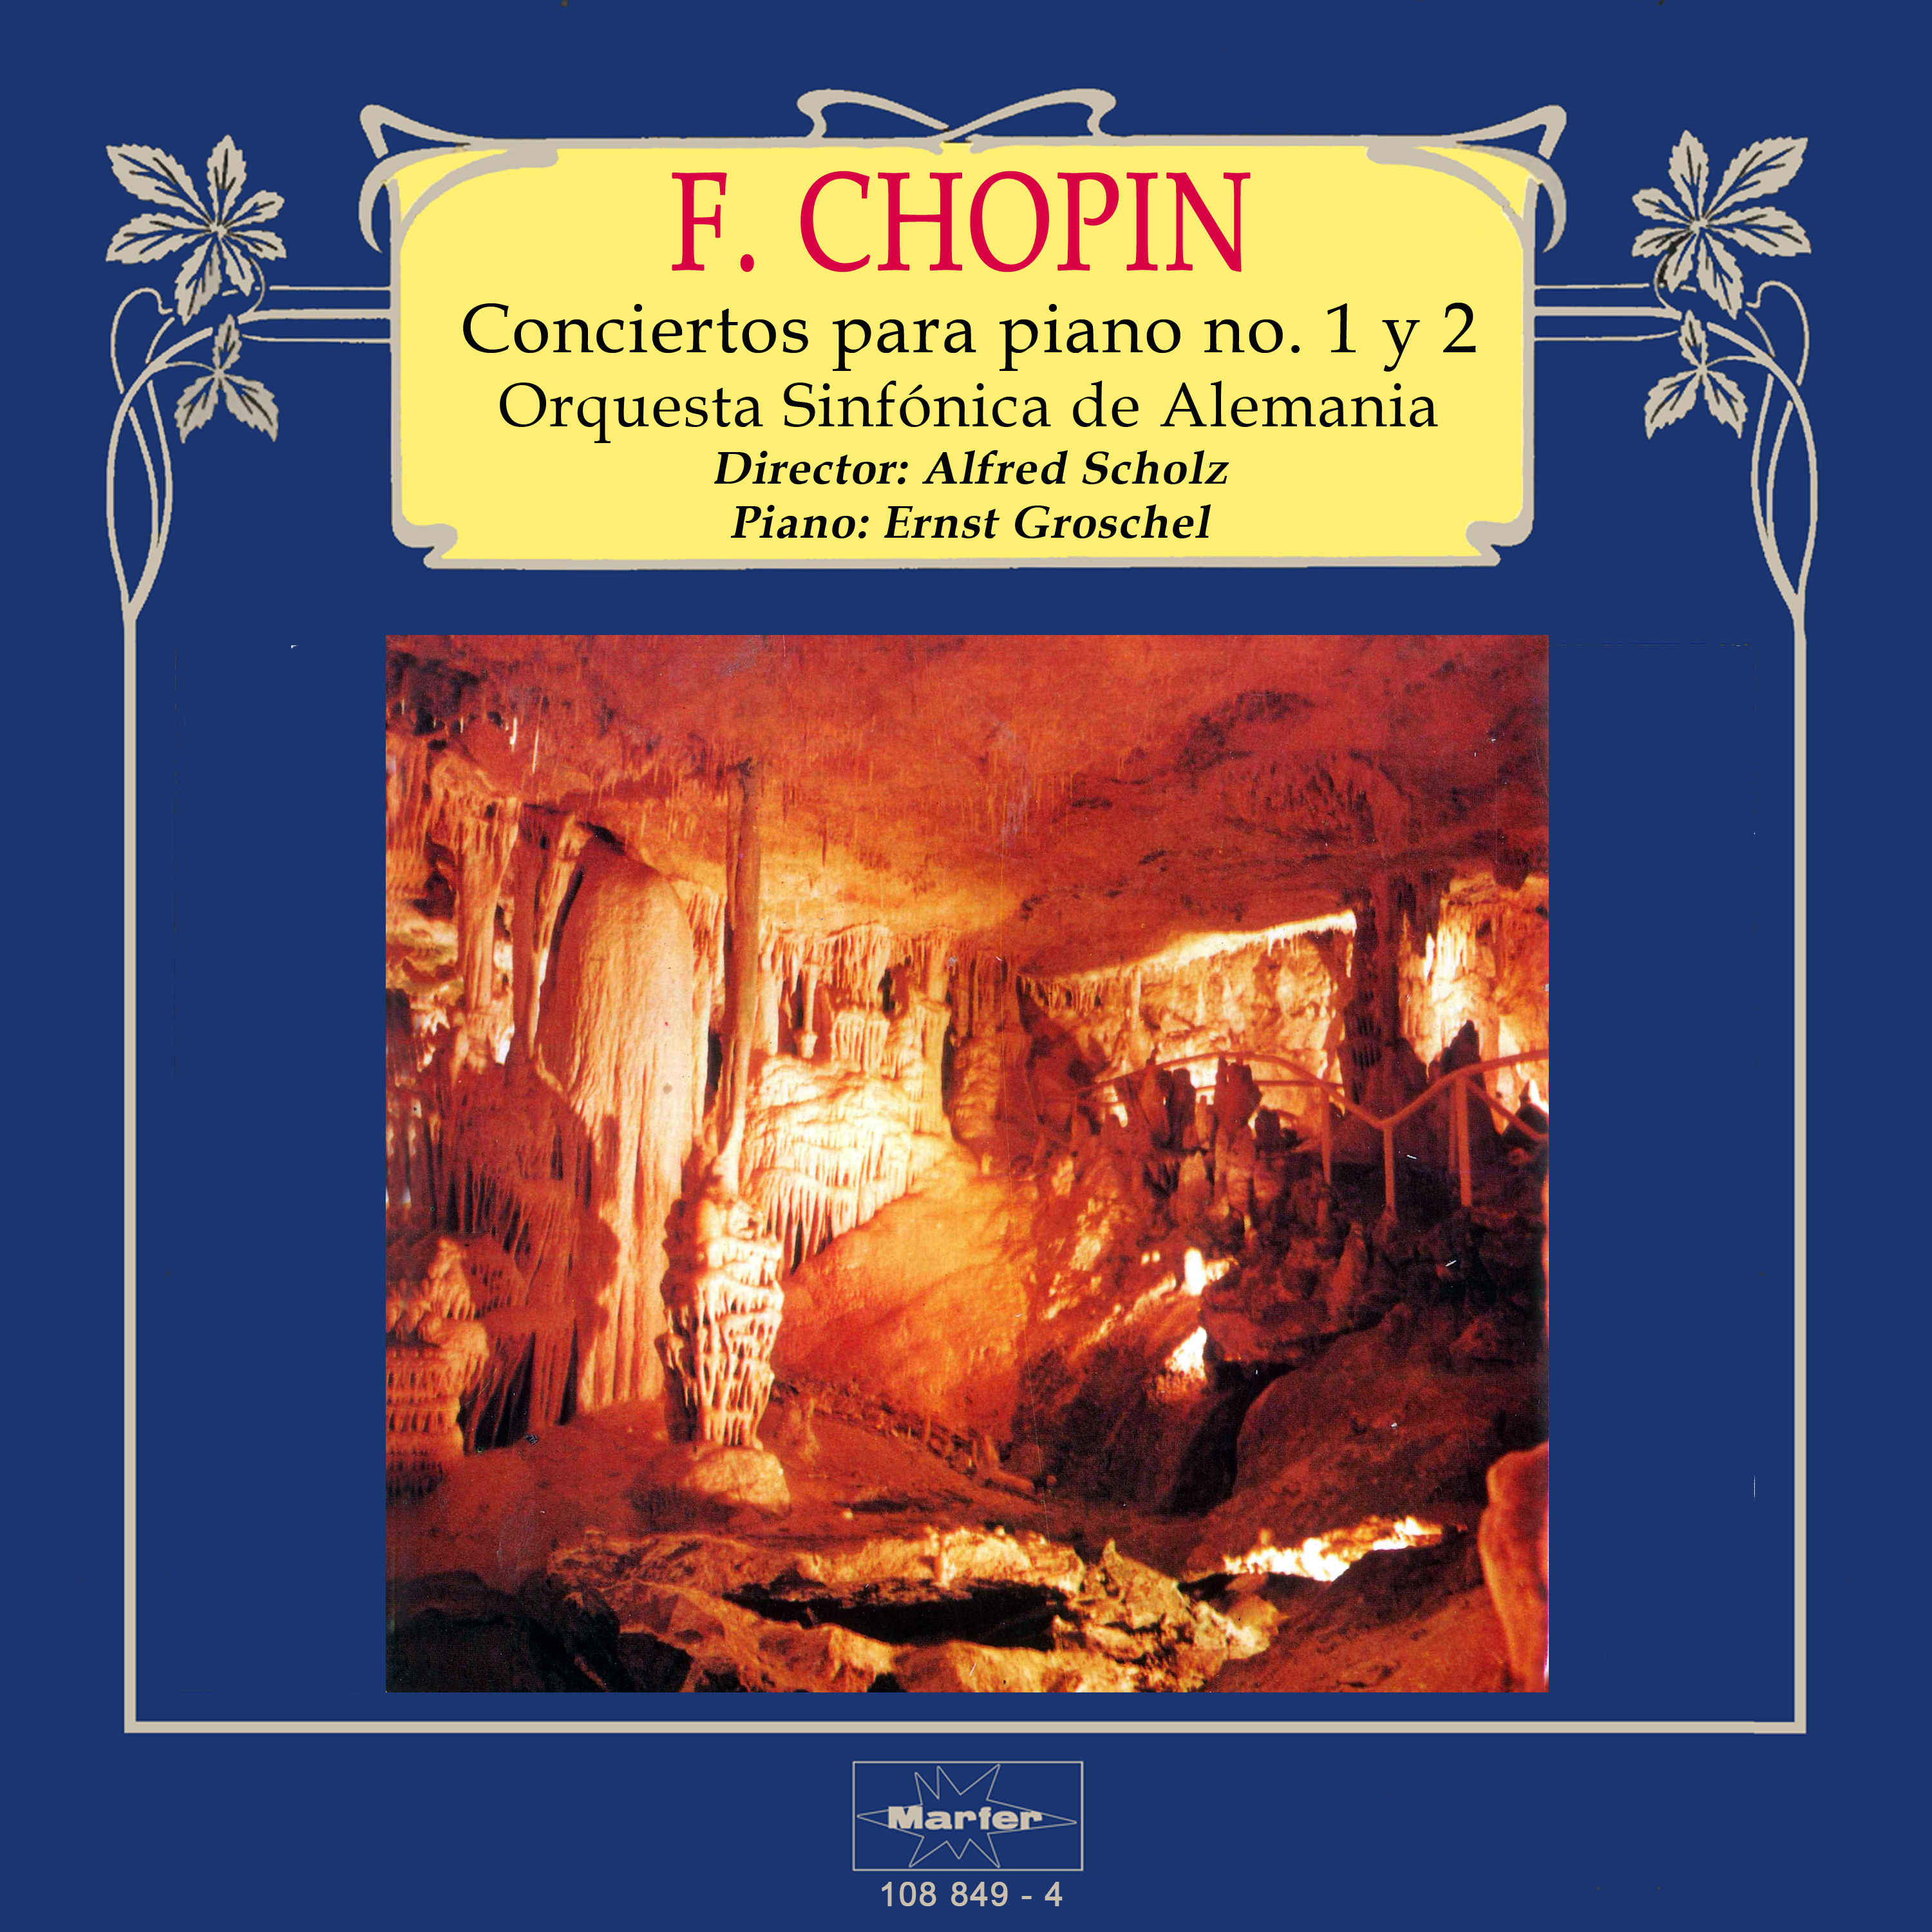 Chopin: Conciertos para piano No. 1 y 2